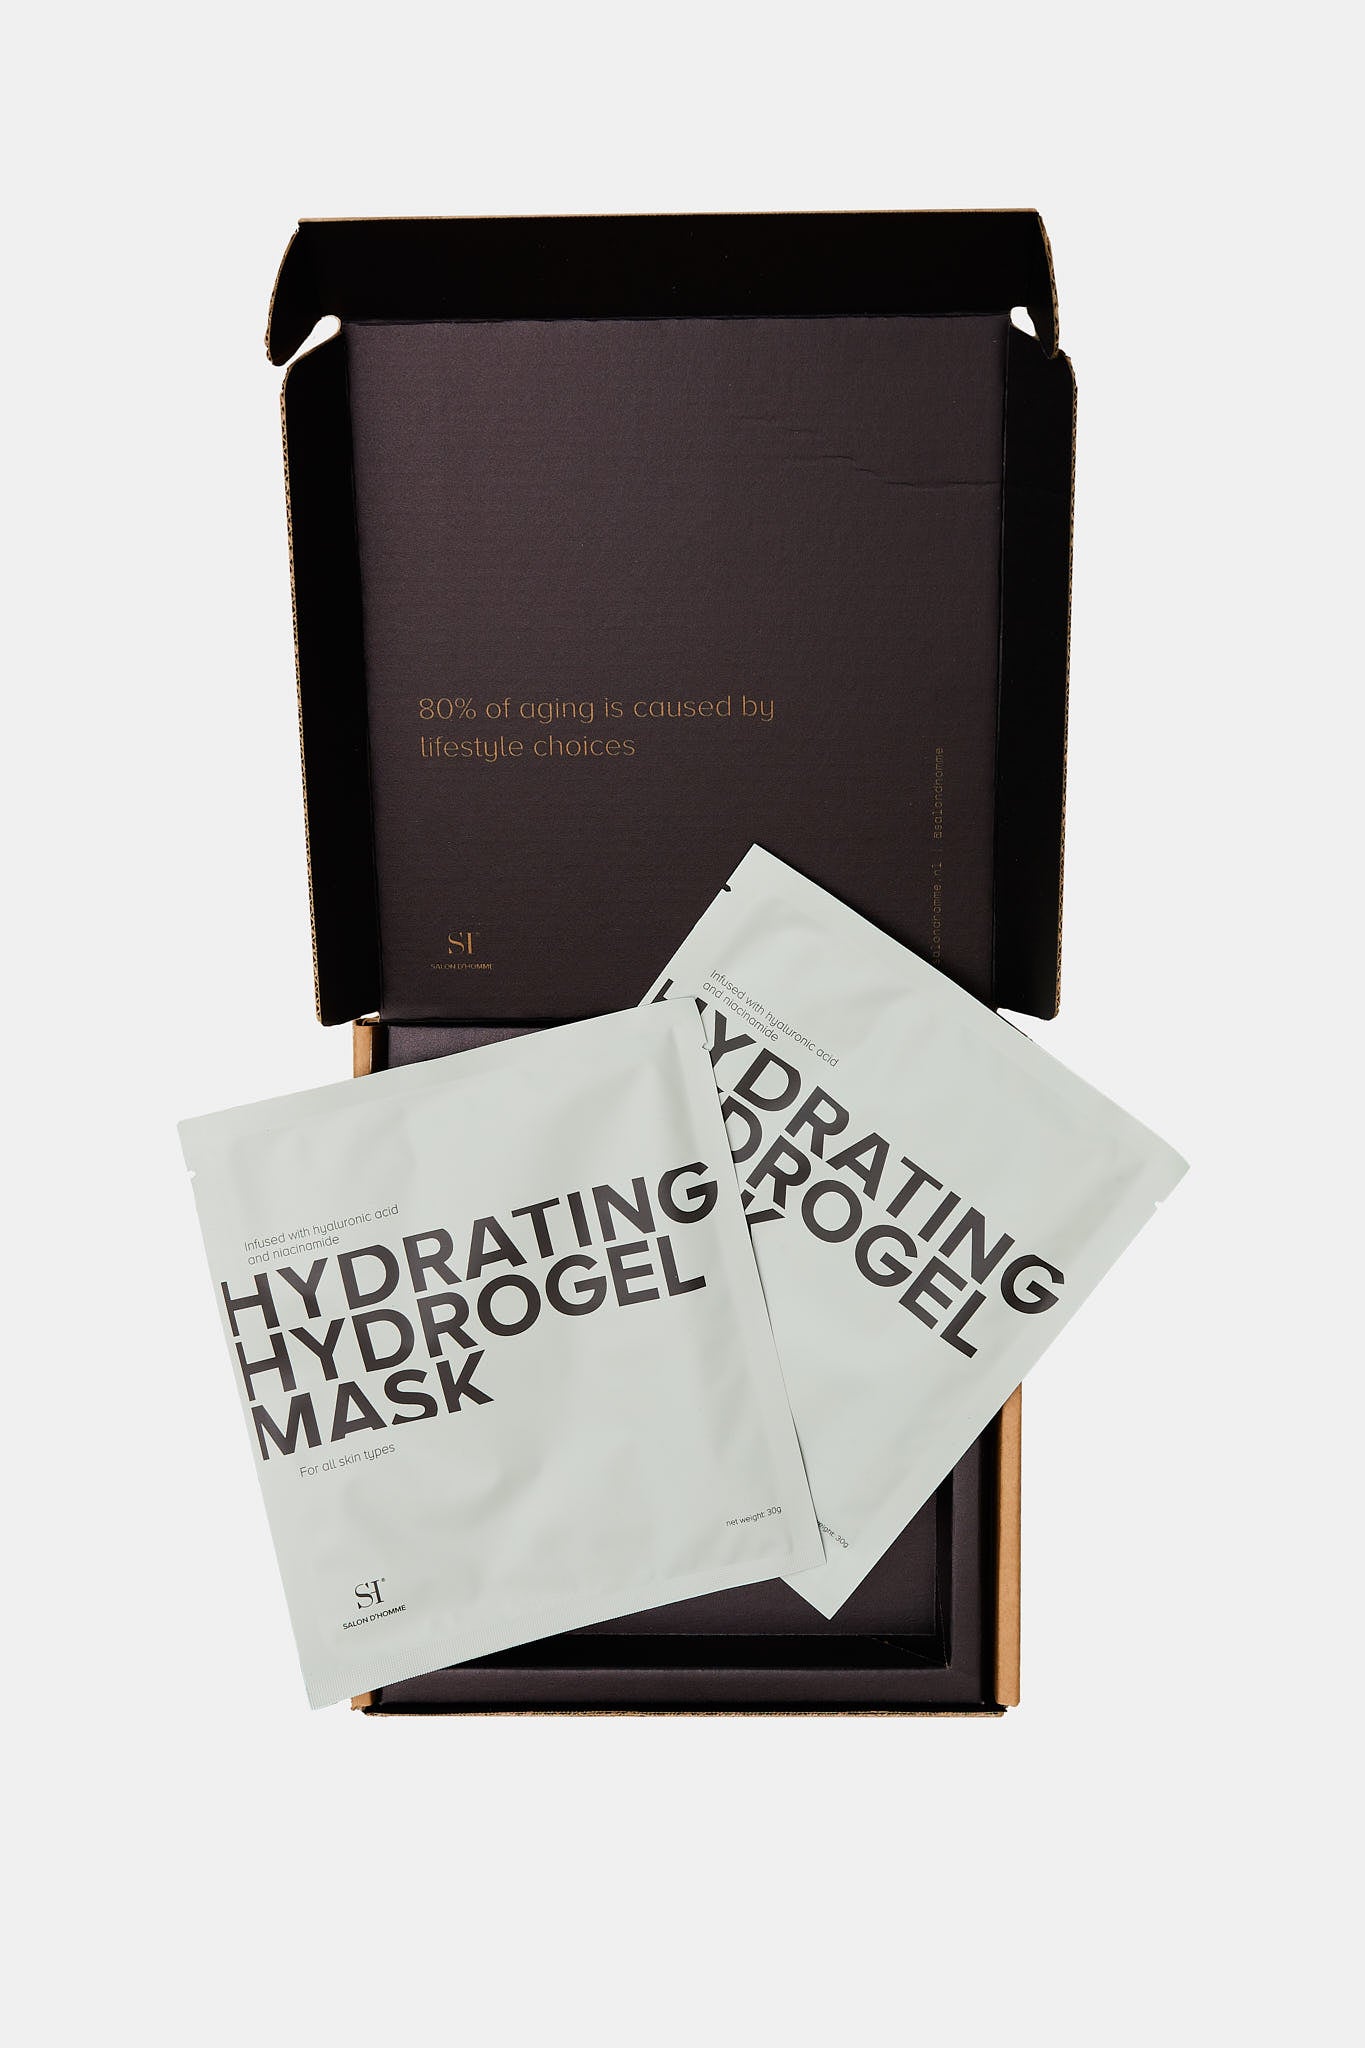 Hydrating Hydrogel Mask (Limited Edition 2x)